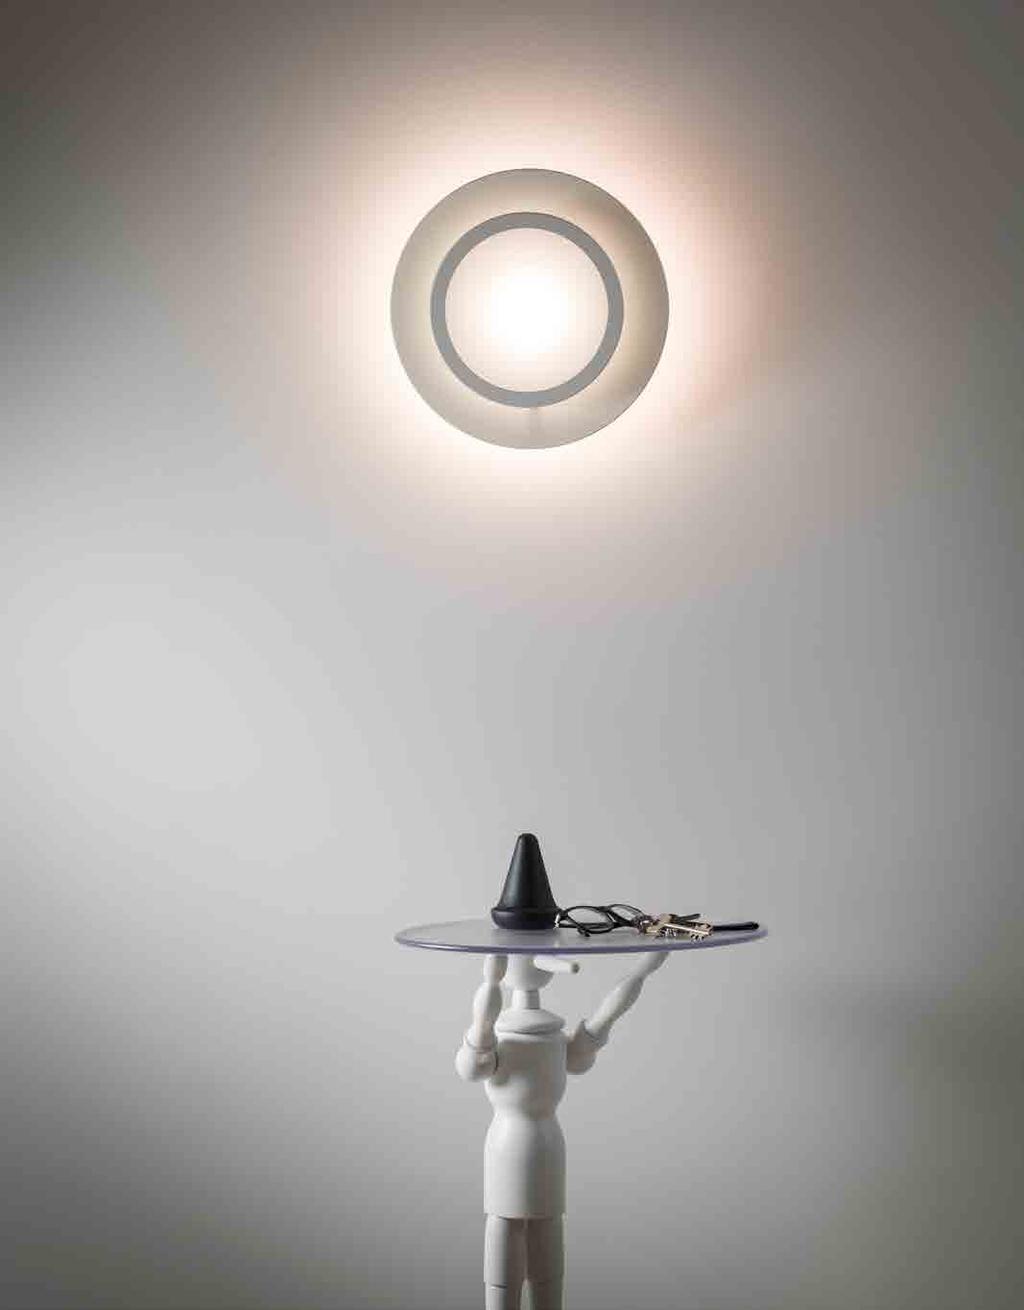 MANAMI Lampada a LED da parete a diffusione. Corpo in alluminio verniciato con possibilità di diversi colori per anello ed elemento centrale secondo palette RAL.